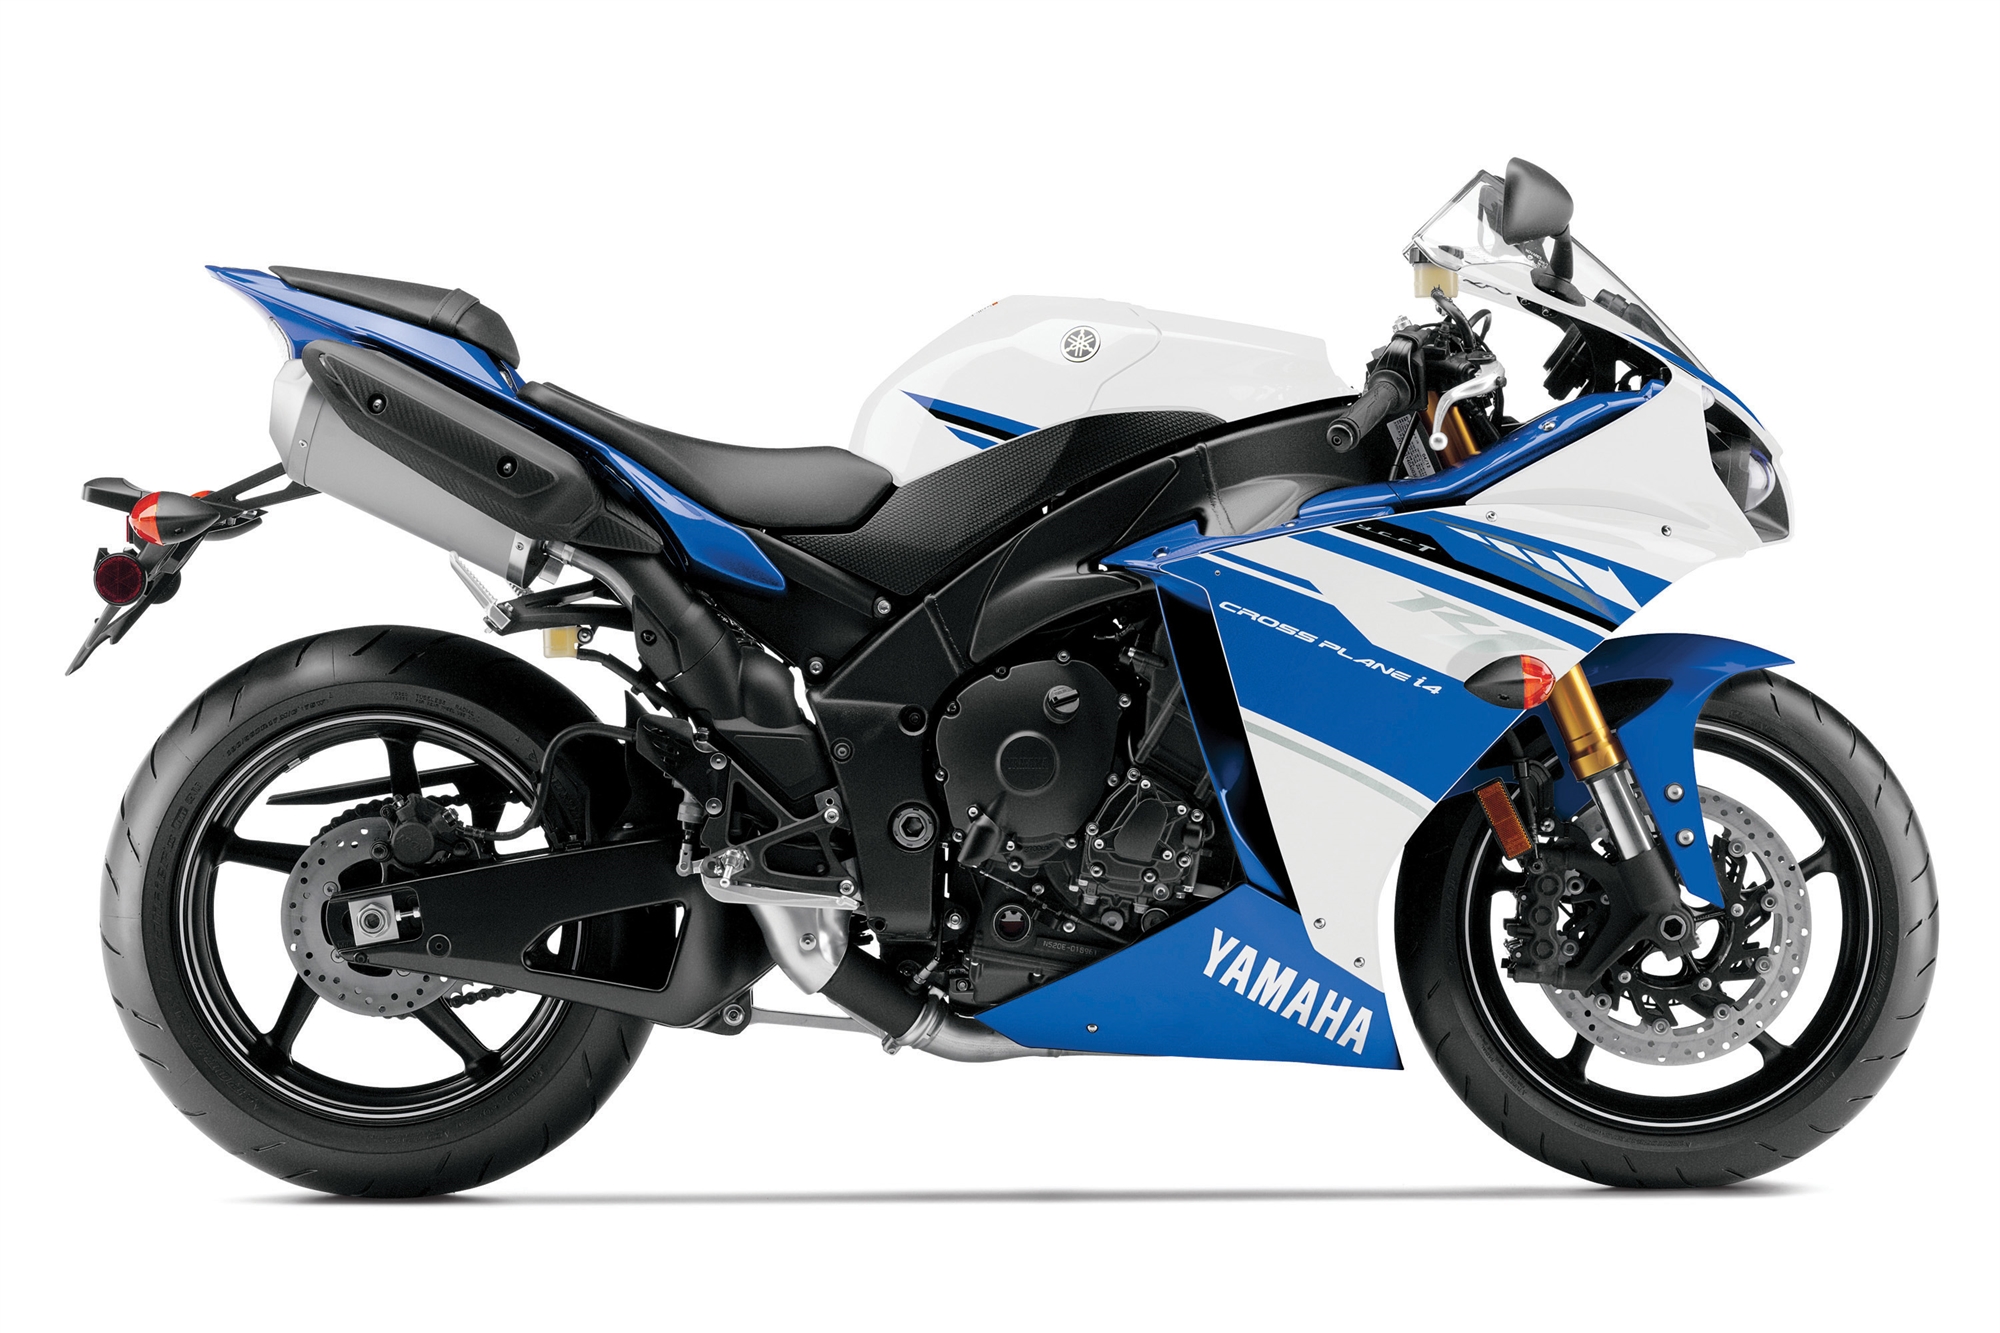 Yamaha Global Rilis Produk 2014 R1 Dan R6 Turut Mendapat Tampilan